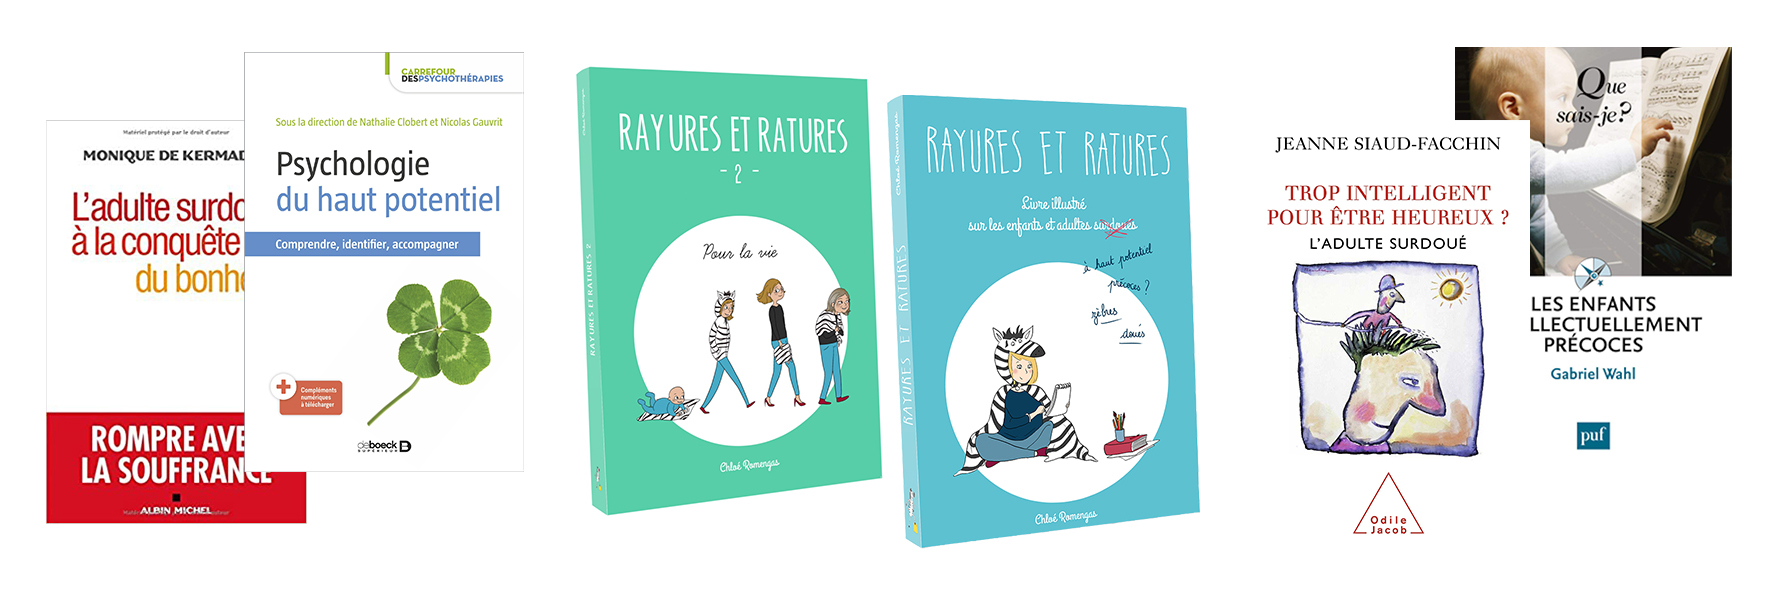 Les livres pour accompagner les enfants surdoués - Rayures et Ratures